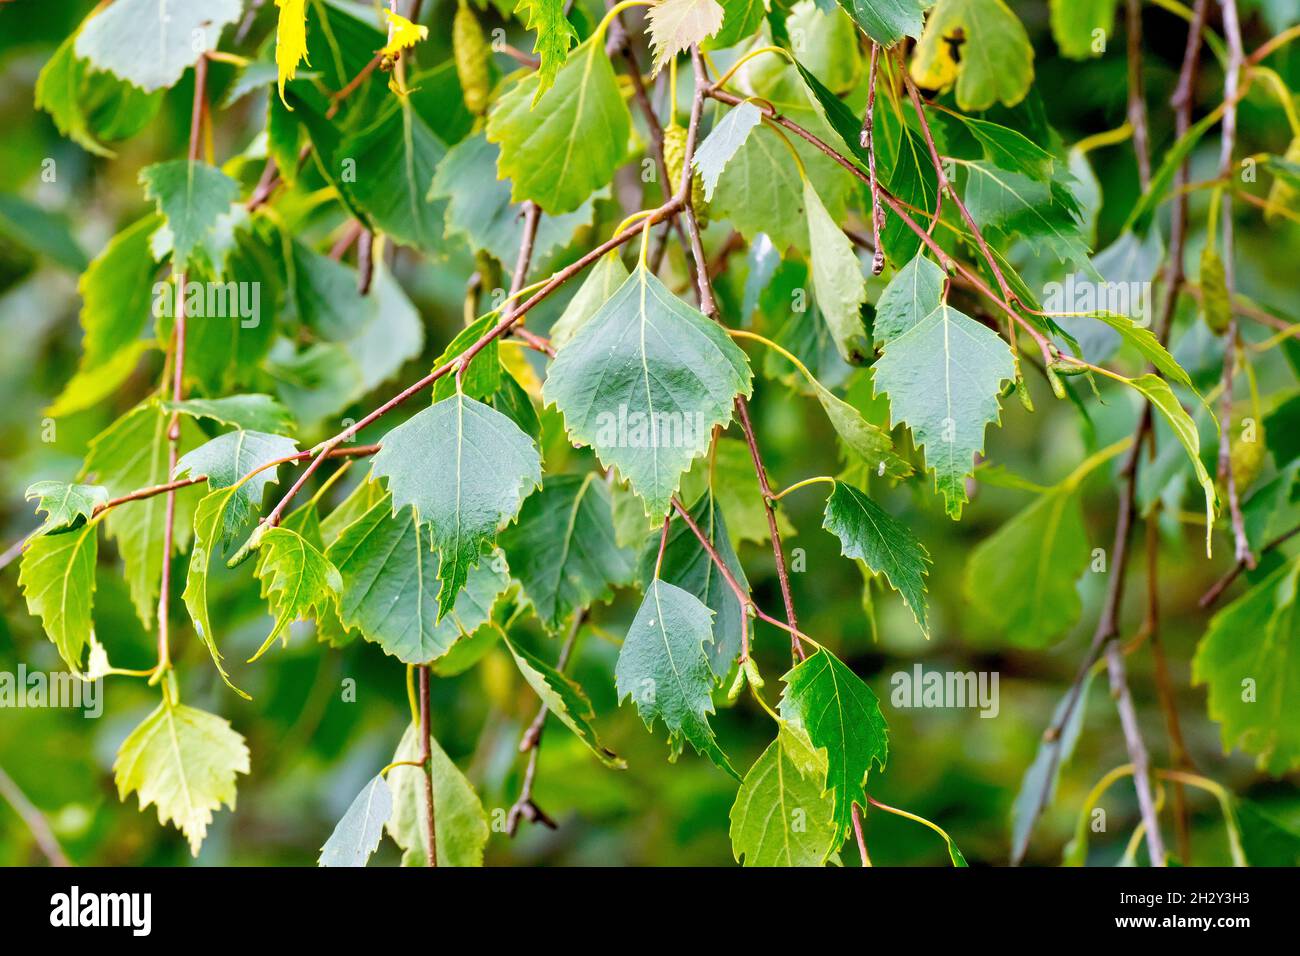 Betulla d'argento (betula pendula), primo piano delle foglie verdi dell'albero. Foto Stock